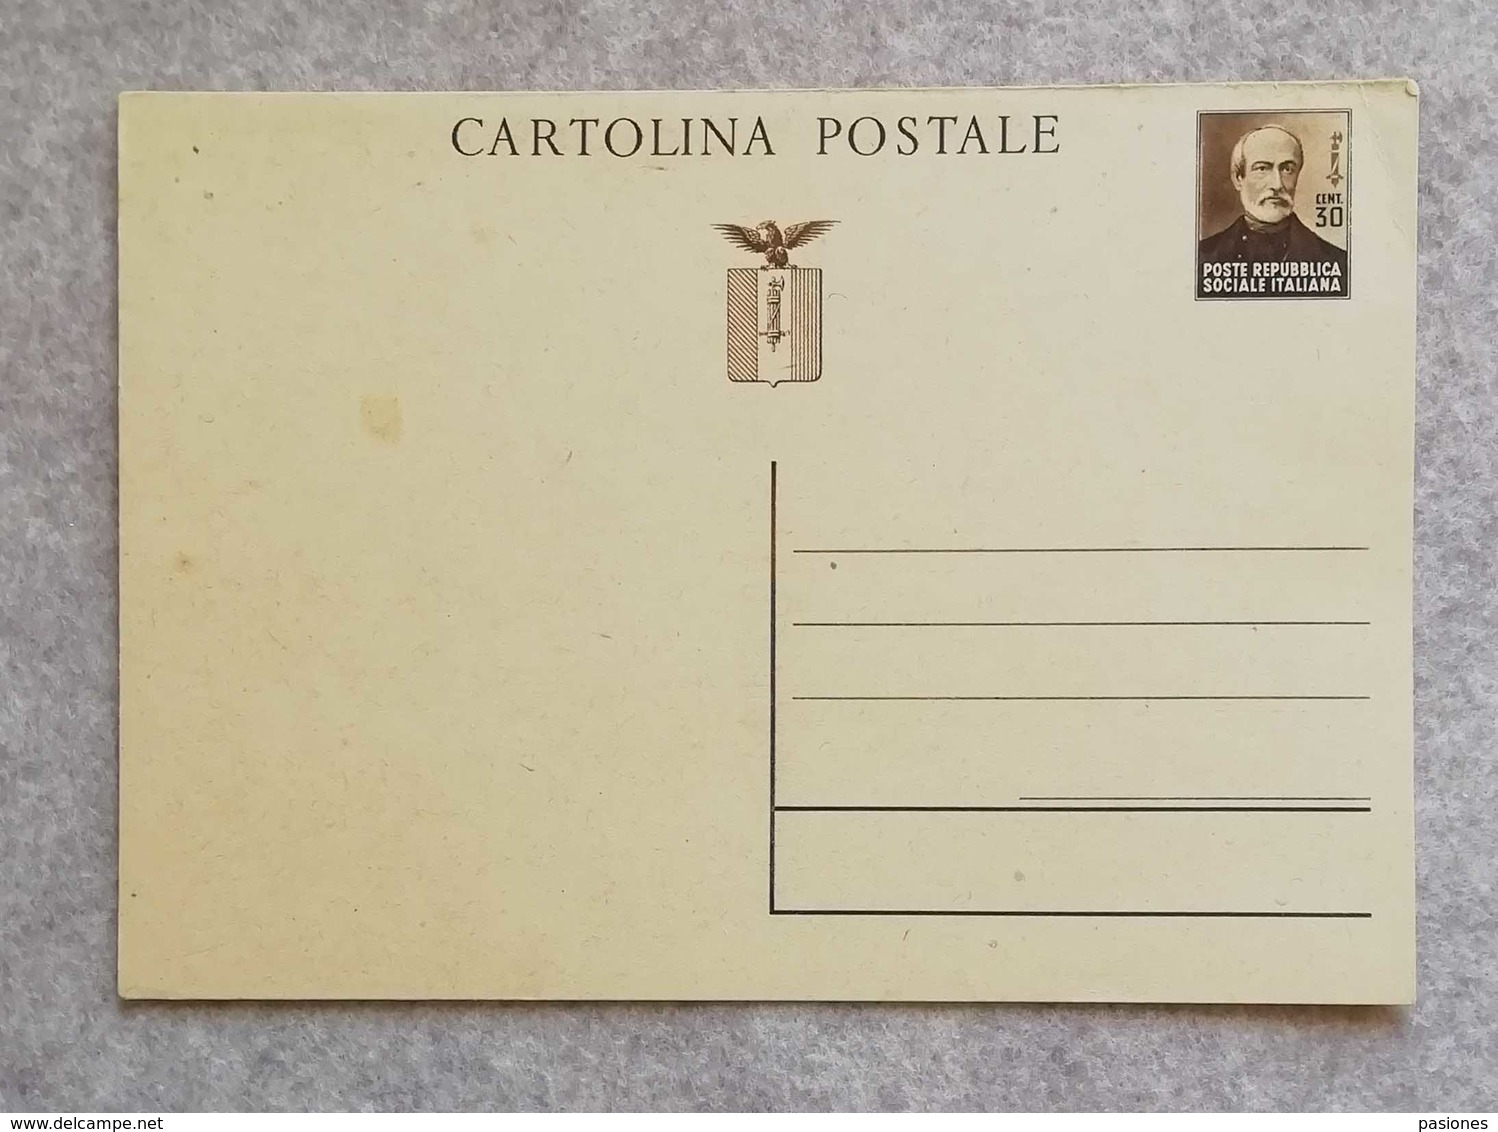 Cartolina Postale Da 30 Cent. "Giuseppe Mazzini" RSI - Non Viaggiata - Entiers Postaux